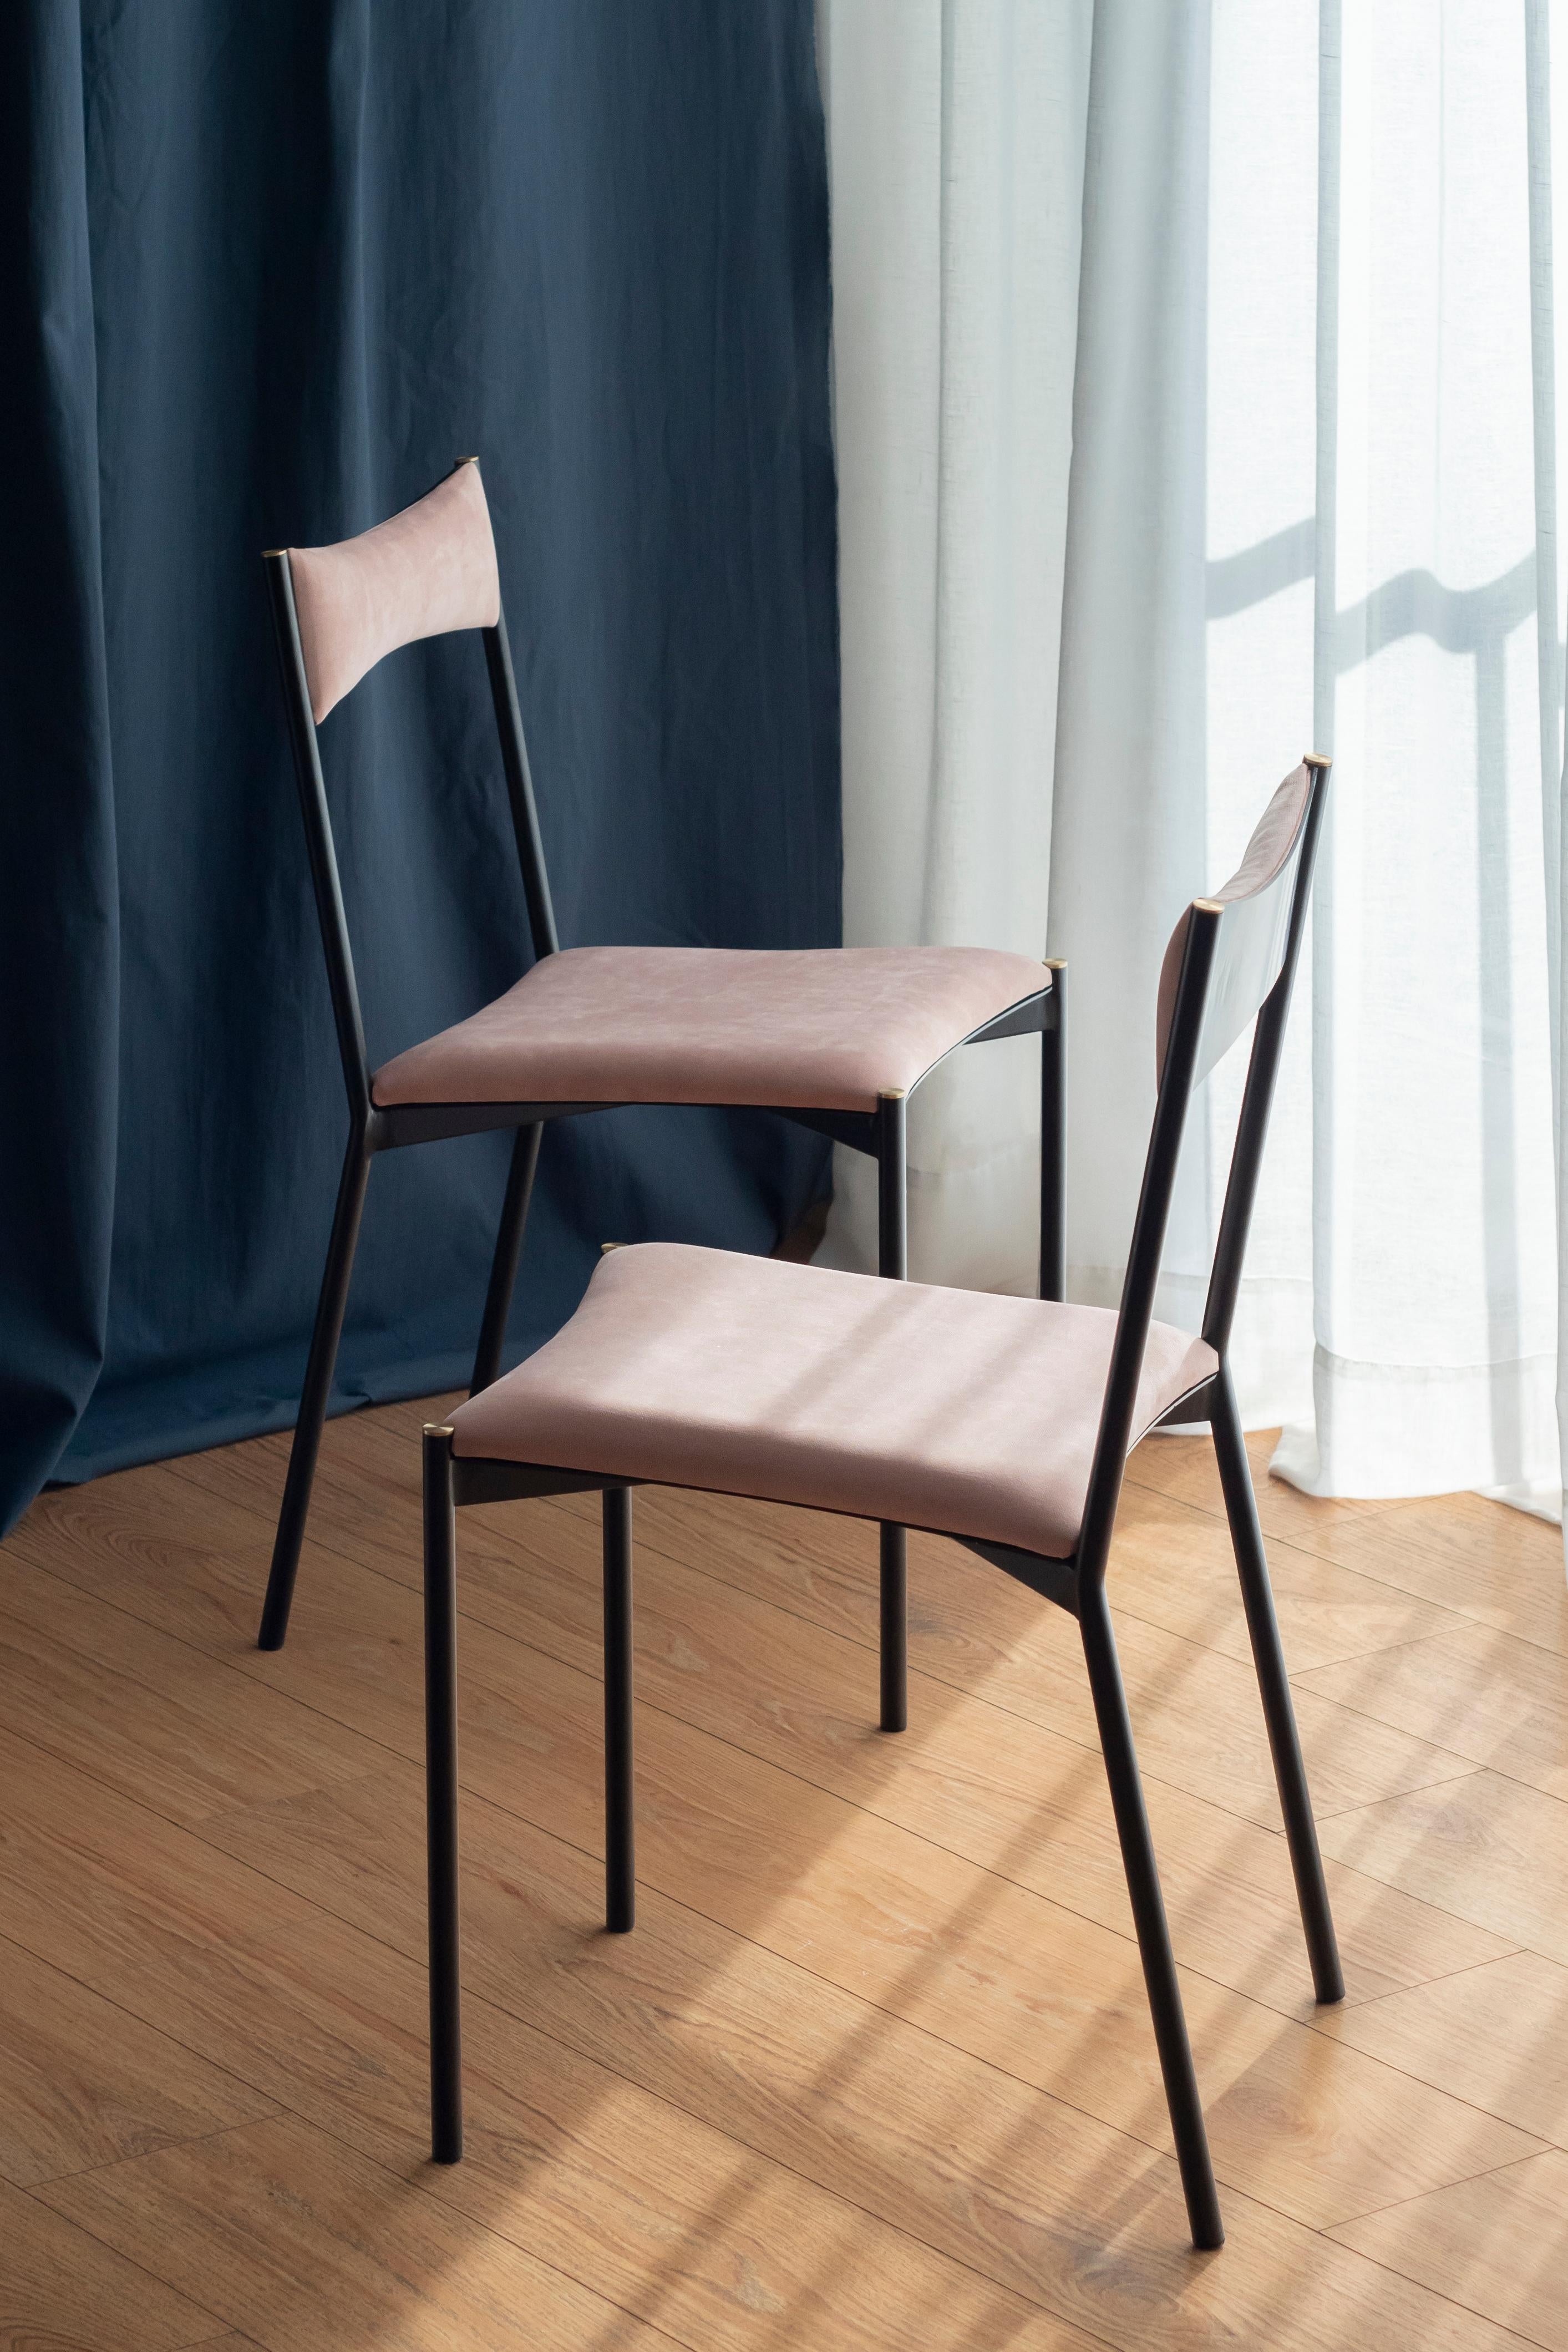 Un ensemble de 2 chaises tensa, rose par Ries
Dimensions : L 40 x P 49,5 x H 82 cm 
MATERIAL : Tube d'acier rond, tôle découpée au laser, mousse haute densité, revêtement en velours, caches en aluminium/bronze.
Peinture par poudrage mat